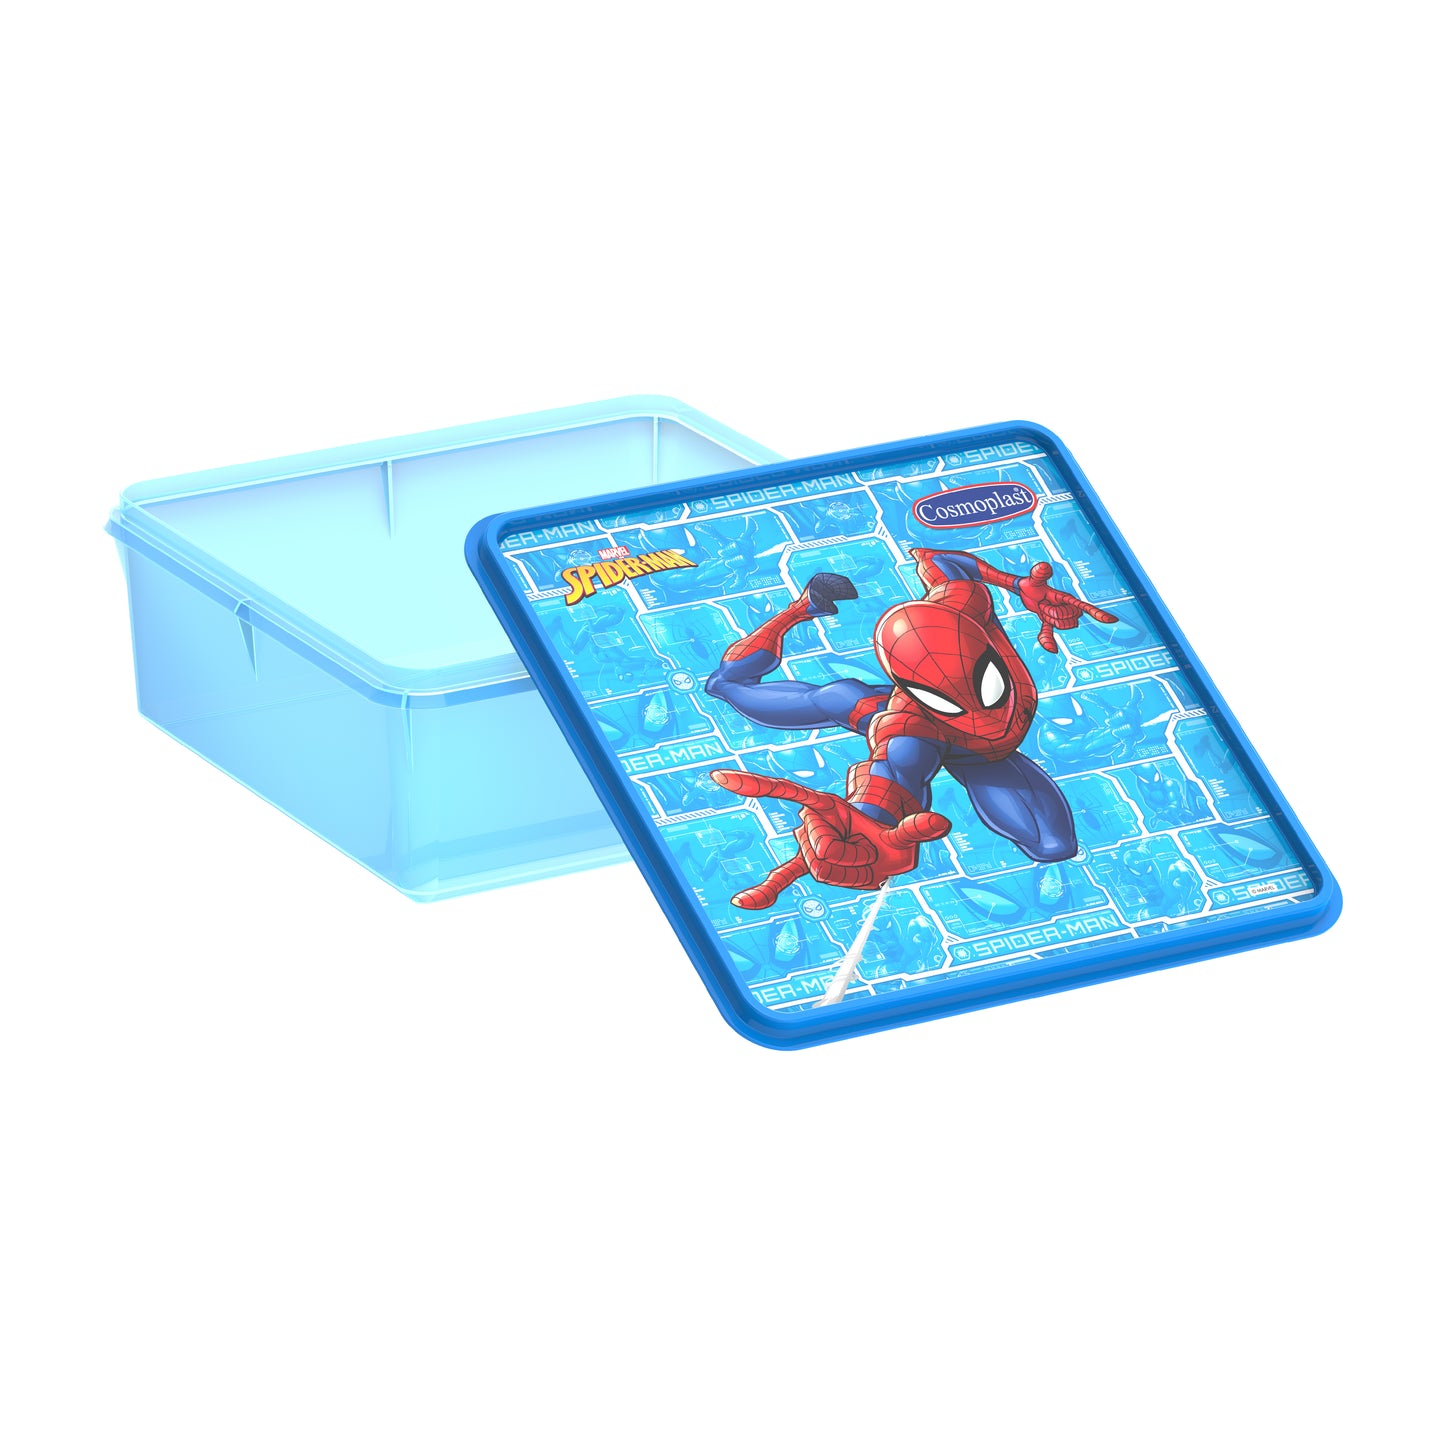 Cosmoplast Disney Marvel Spider Man Storage Box 6 Liters